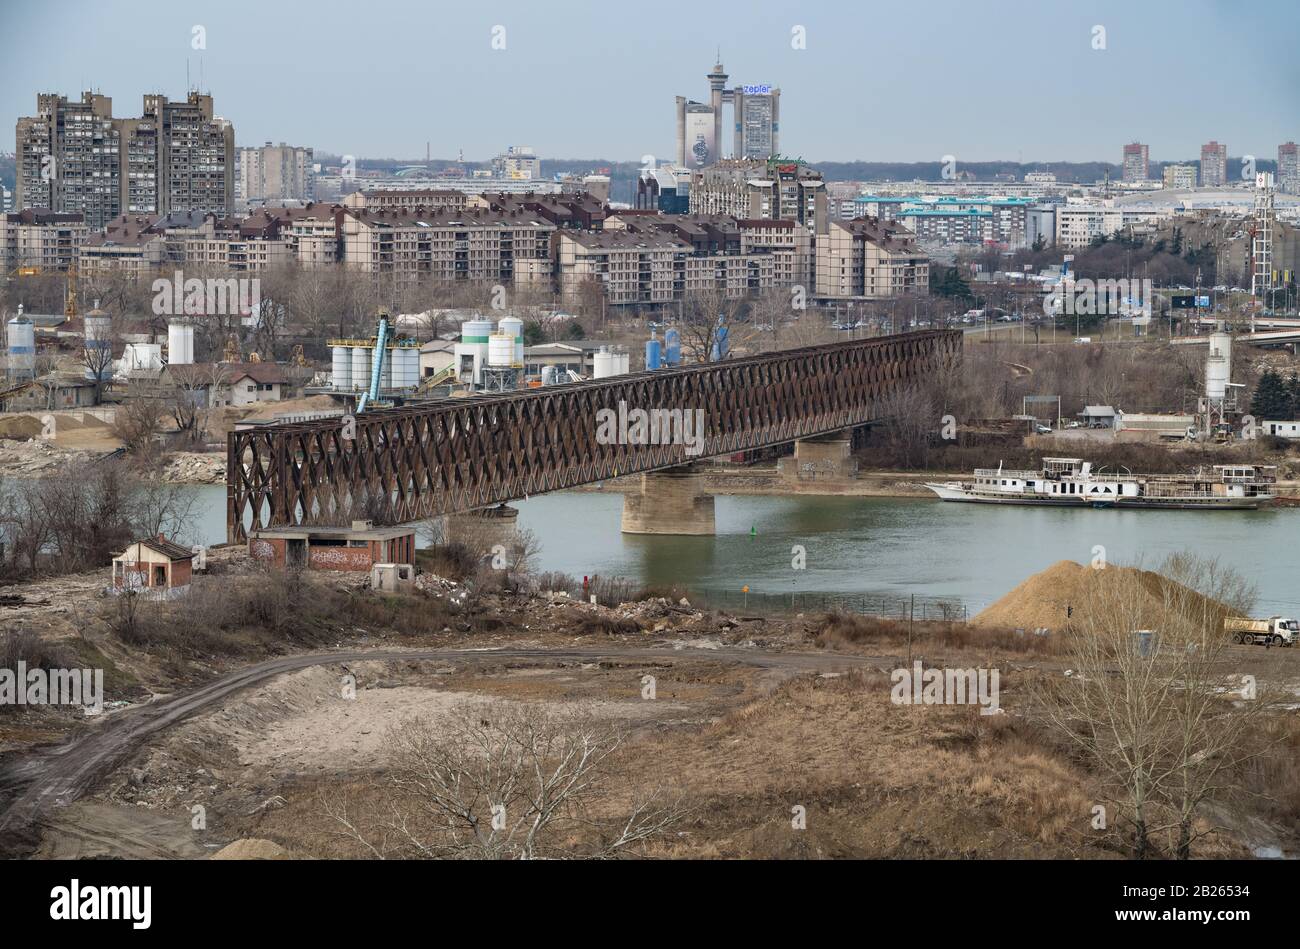 Die Uferpromenade von Belgrad, Serbien, errichtet Gebäude am Ufer des Flusses Sava, in der Nähe der alten Eisenbahnbrücke, die zerstört wird. Stockfoto